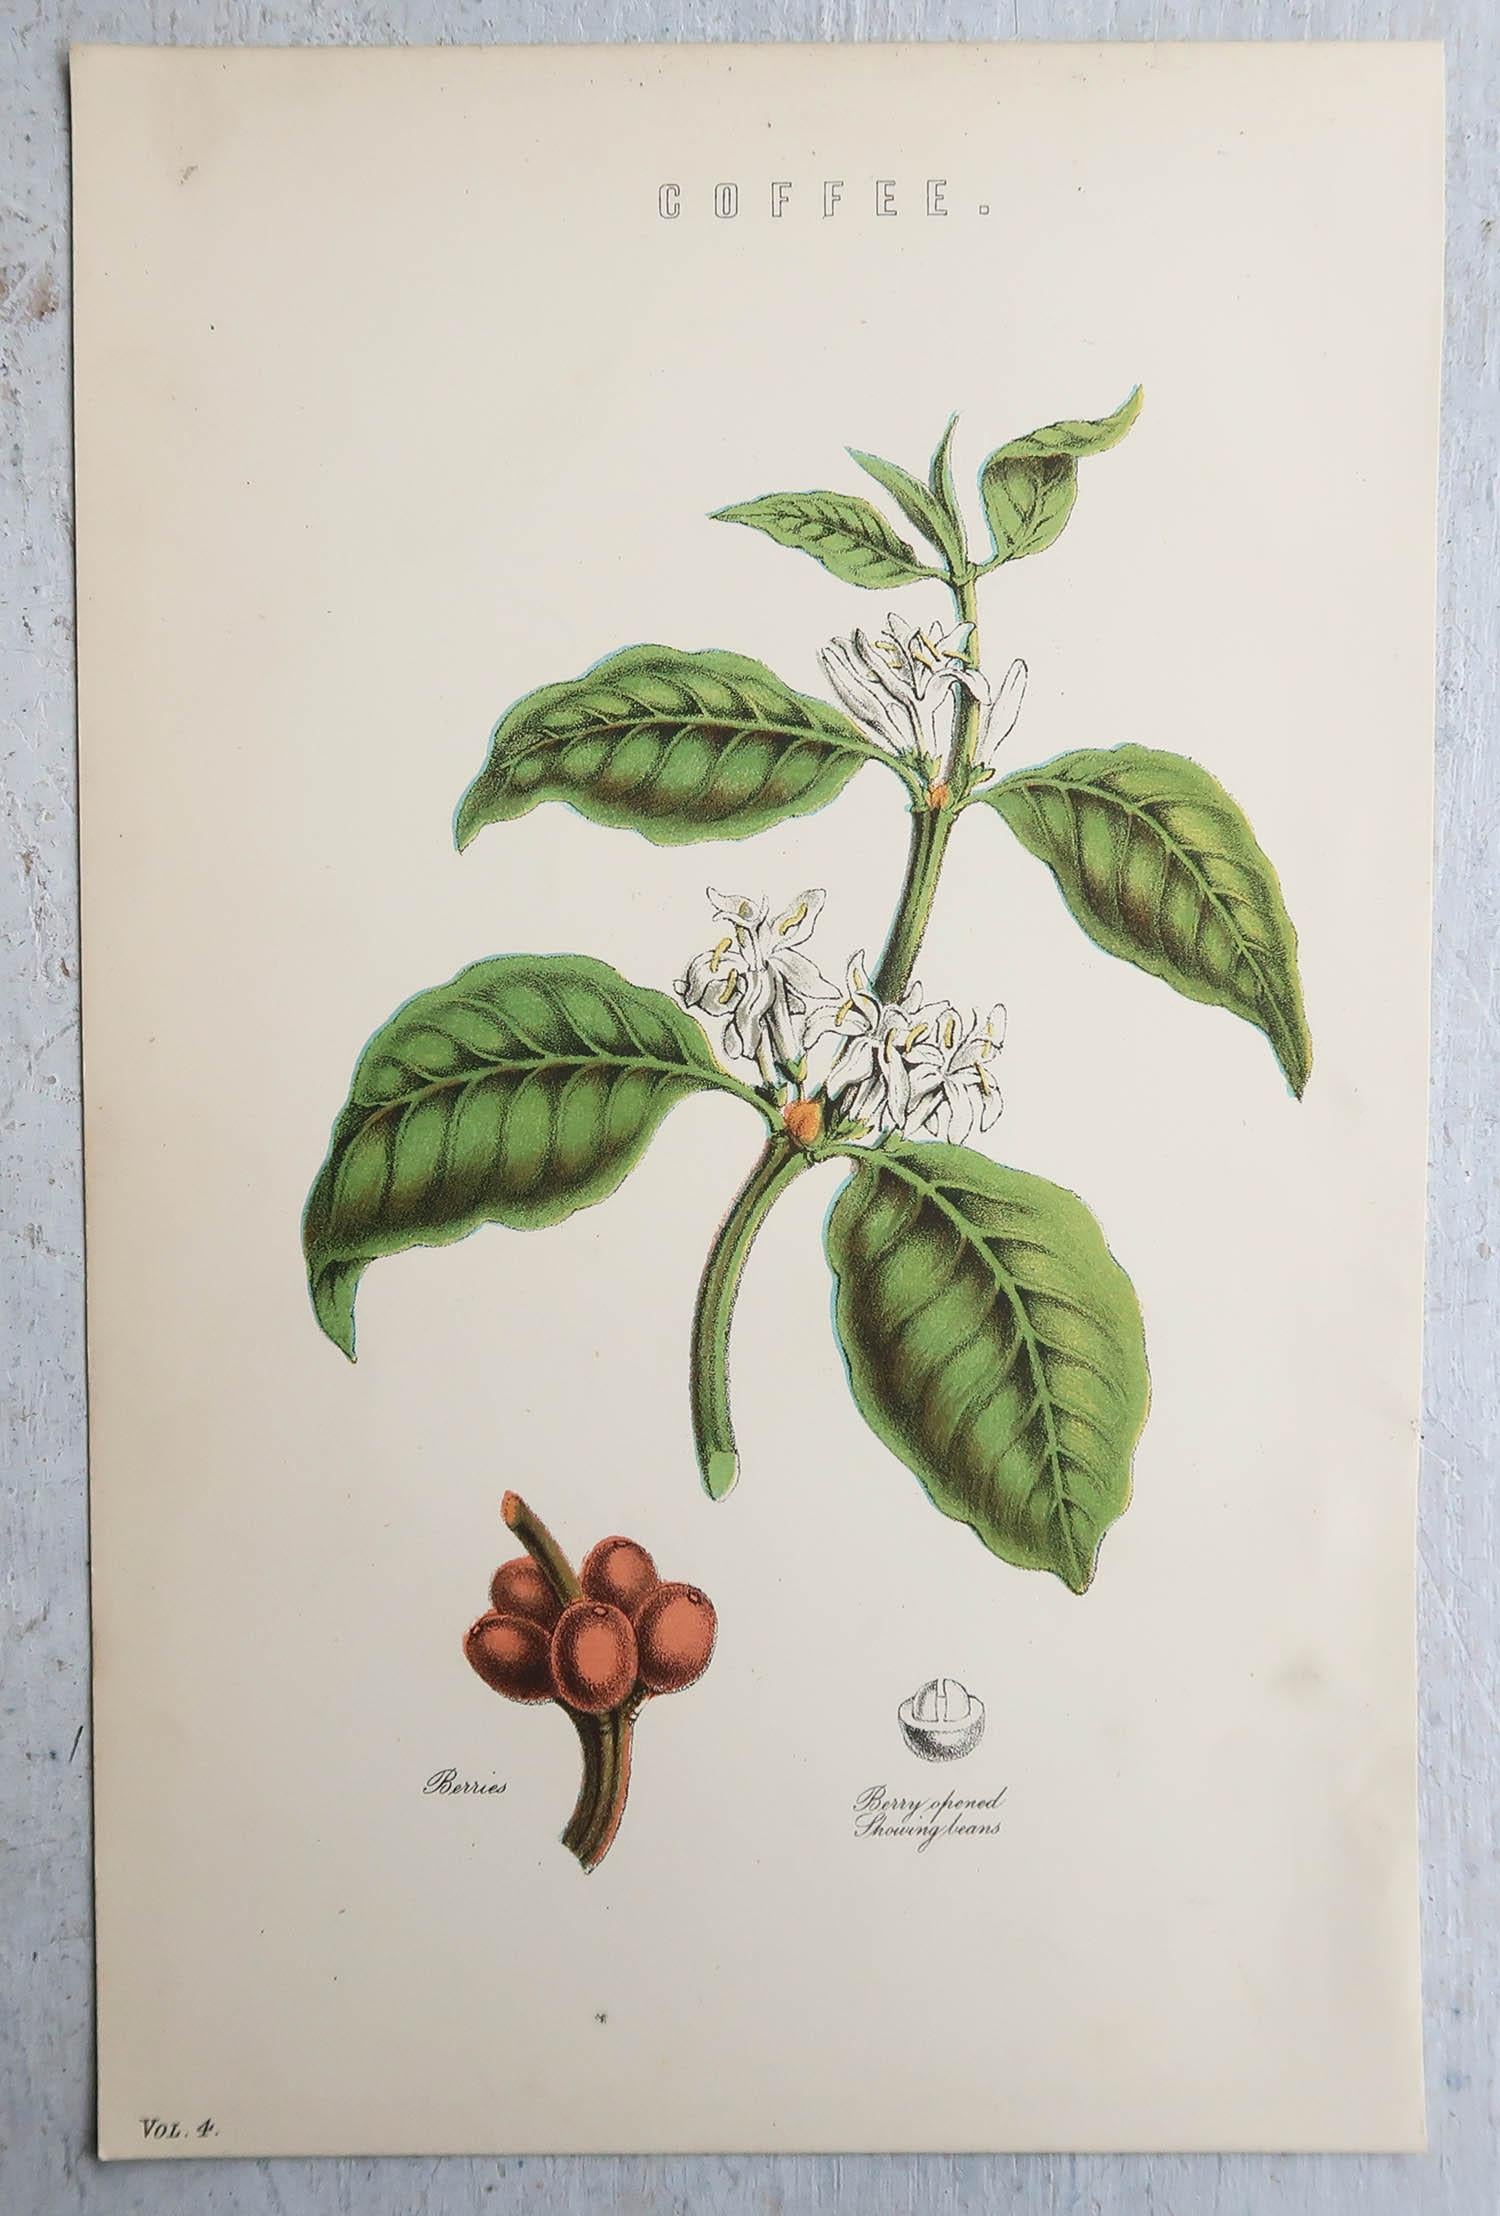 Merveilleux imprimés botaniques 

Chromo-lithographies

Publié par W.Mackenzie. C.1880

Couleur originale

Non encadré.

Livraison gratuite.








